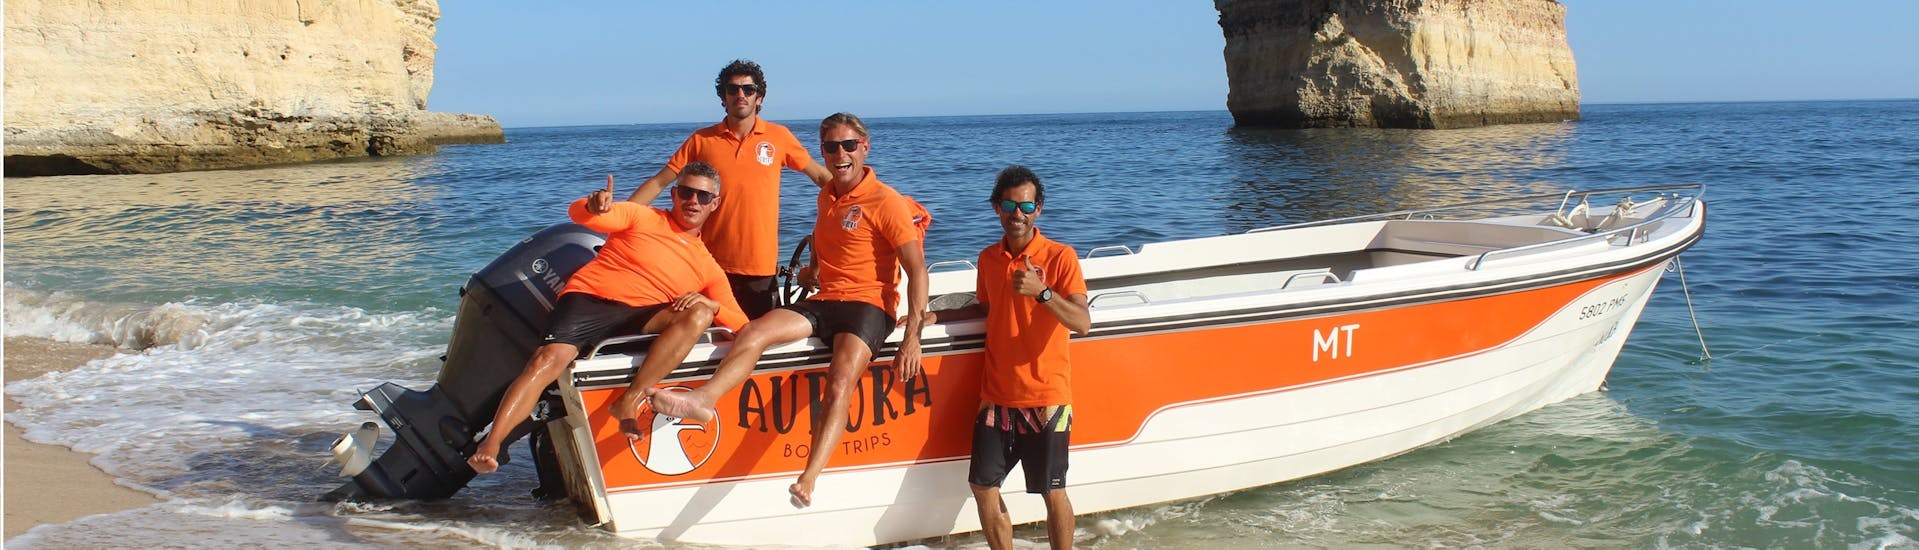 Unsere Crew mit dem Boot während einer Bootstour von Armação de Pêra zu 15 Höhlen einschließlich Benagil mit Aurora Boat Trips.